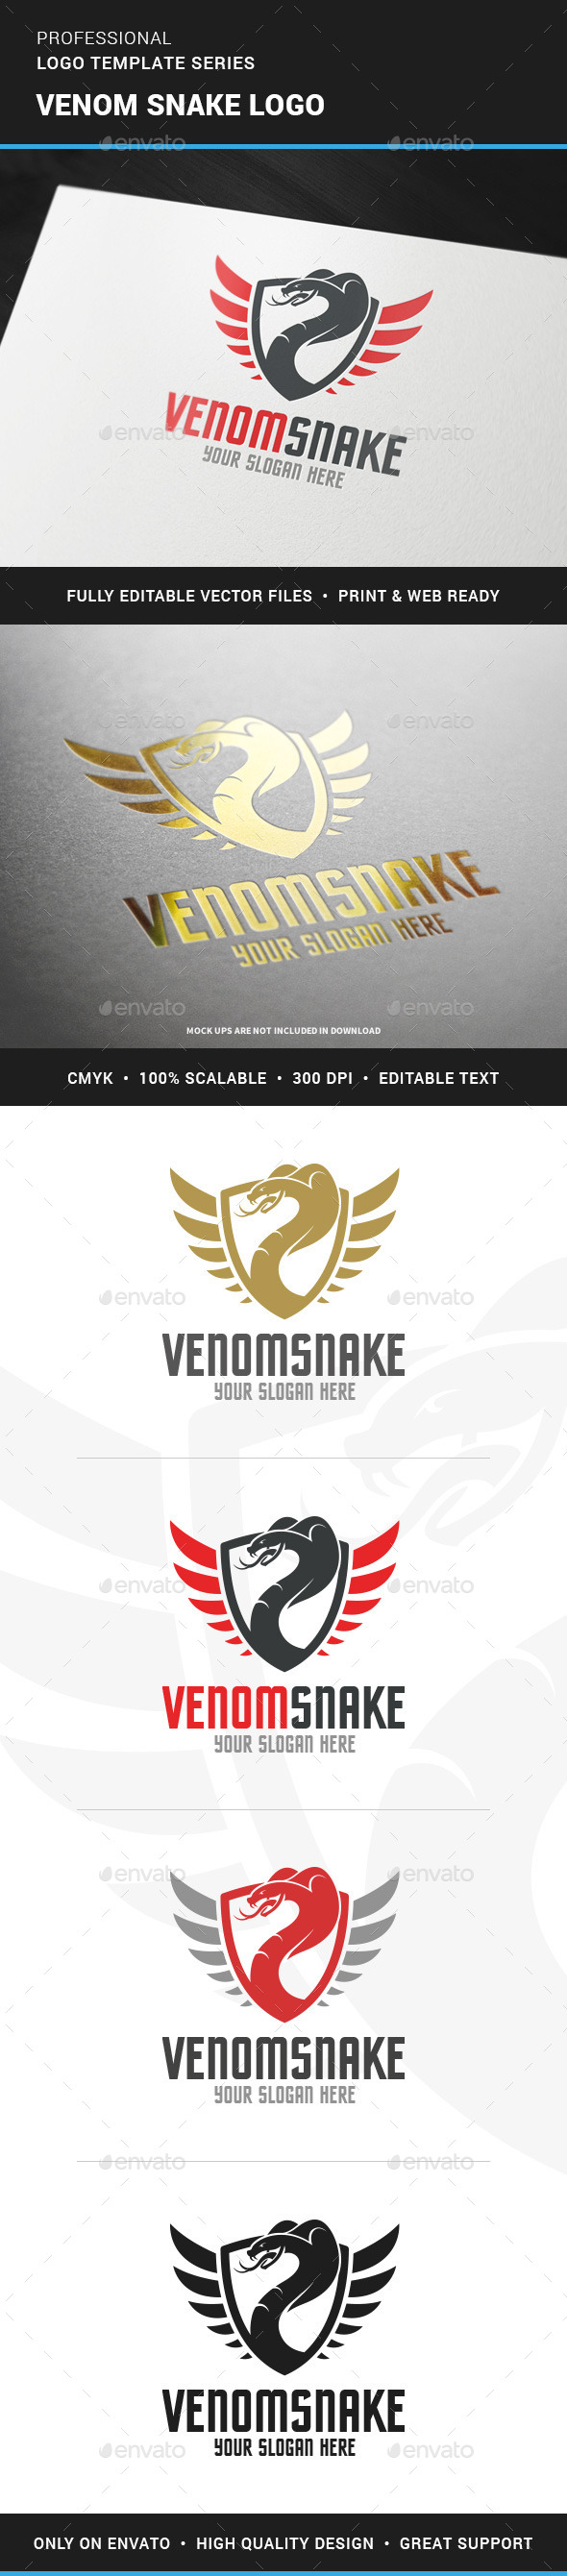 Venom Snake Logo Template